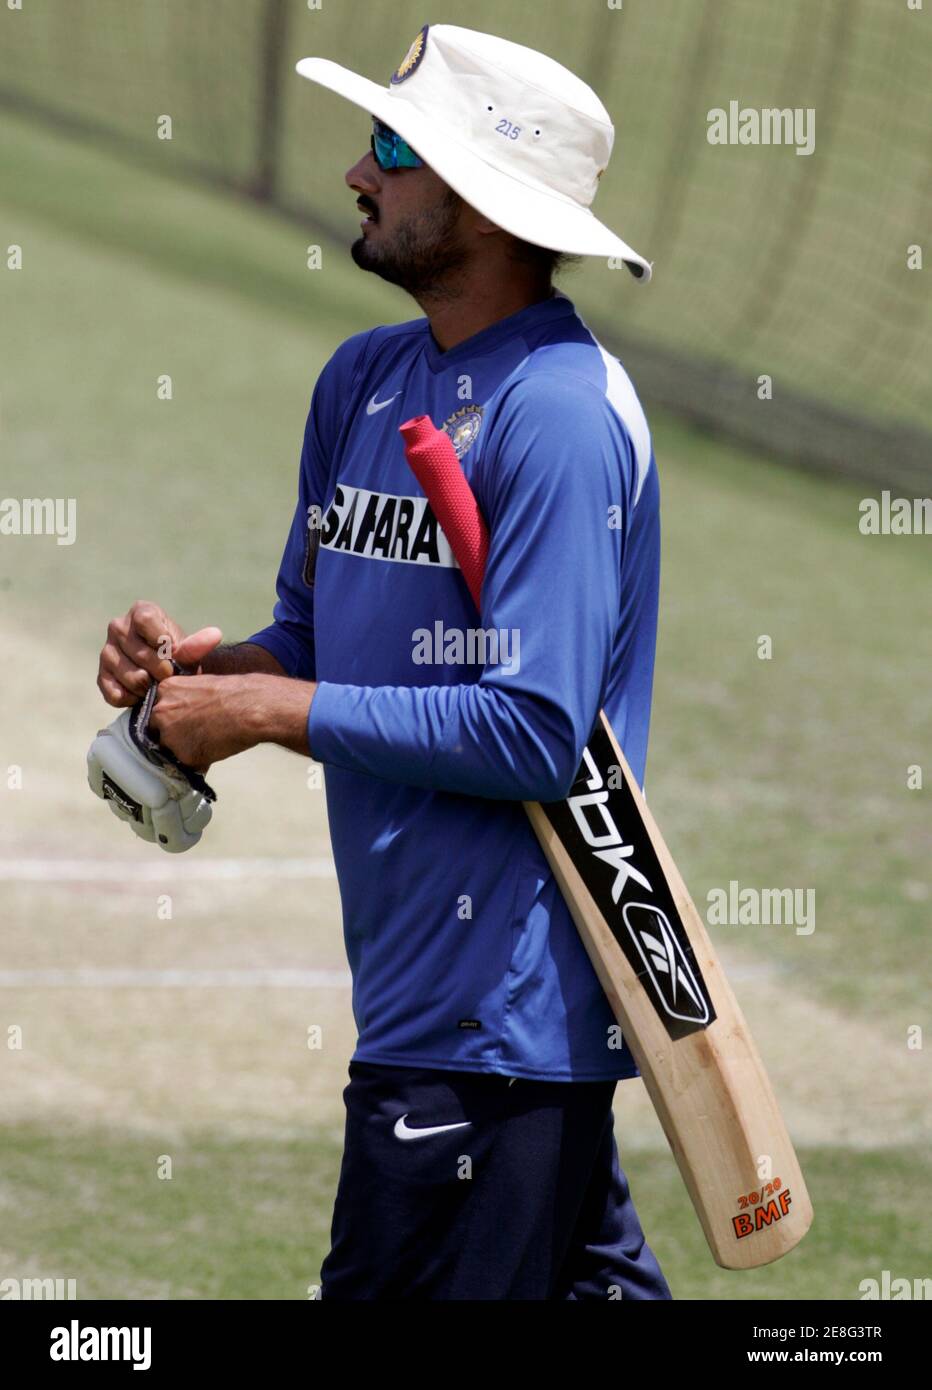 Indiens Harbhajan Singh setzt auf einen Handschuh, bevor Batting während des Trainings an der Adelaide Oval 23. Januar 2008 vor der vierten Cricket Test gegen Australien voraussichtlich Donnerstag beginnen. Australien führt die Reihe 2: 1. REUTERS / Willen Burgess (Australien) Stockfoto